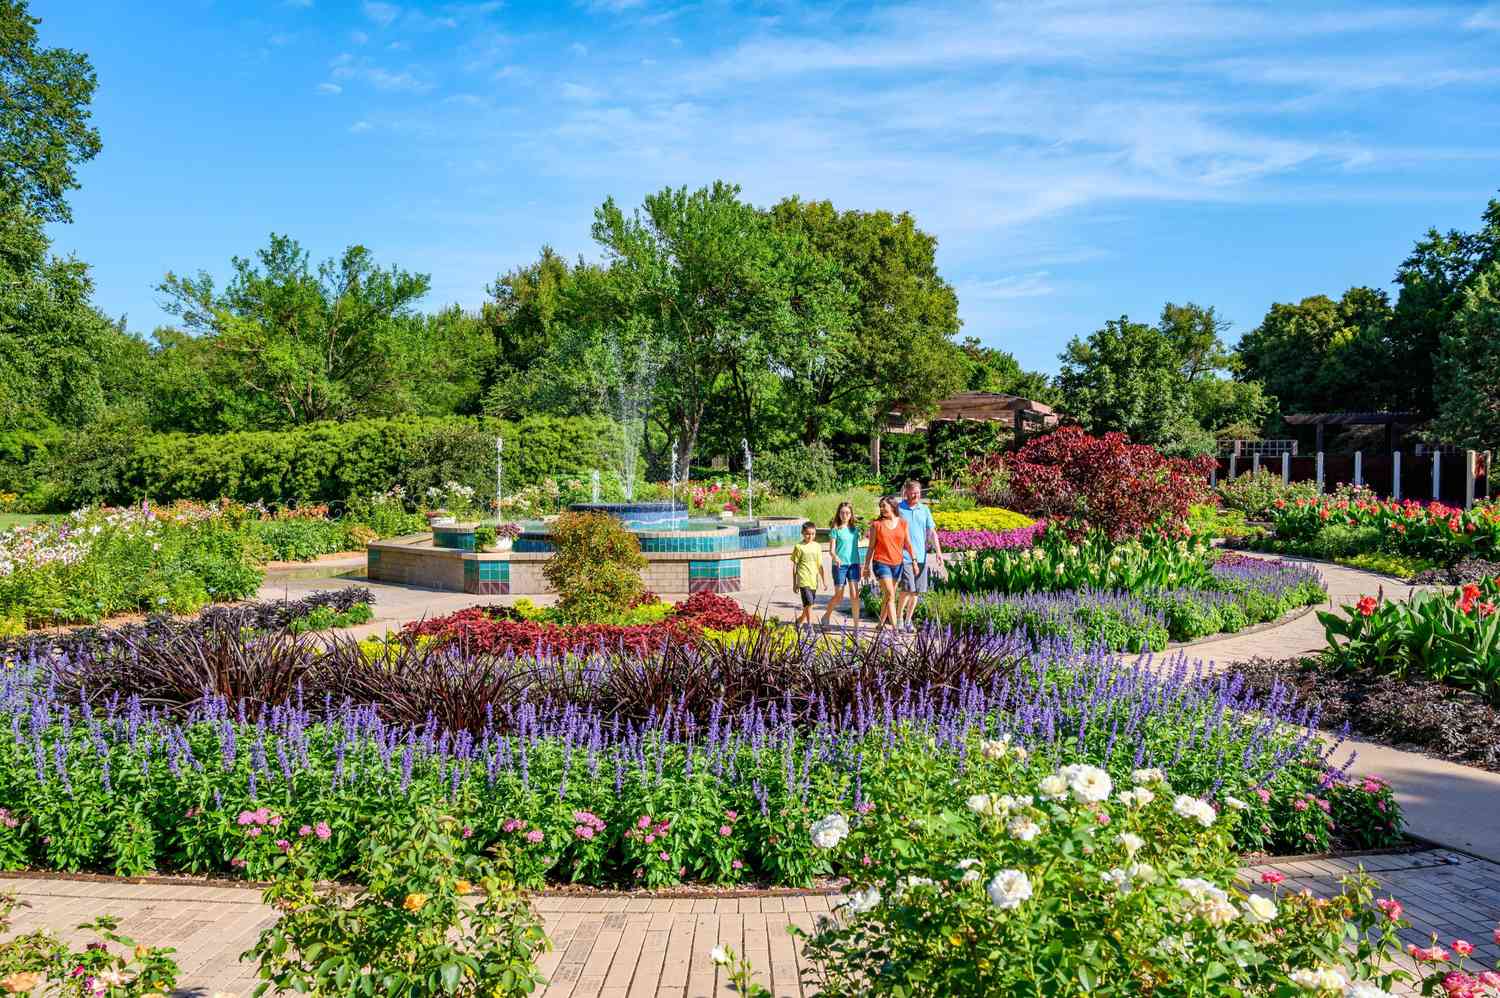 Botanica garden in Wichita, Kansas